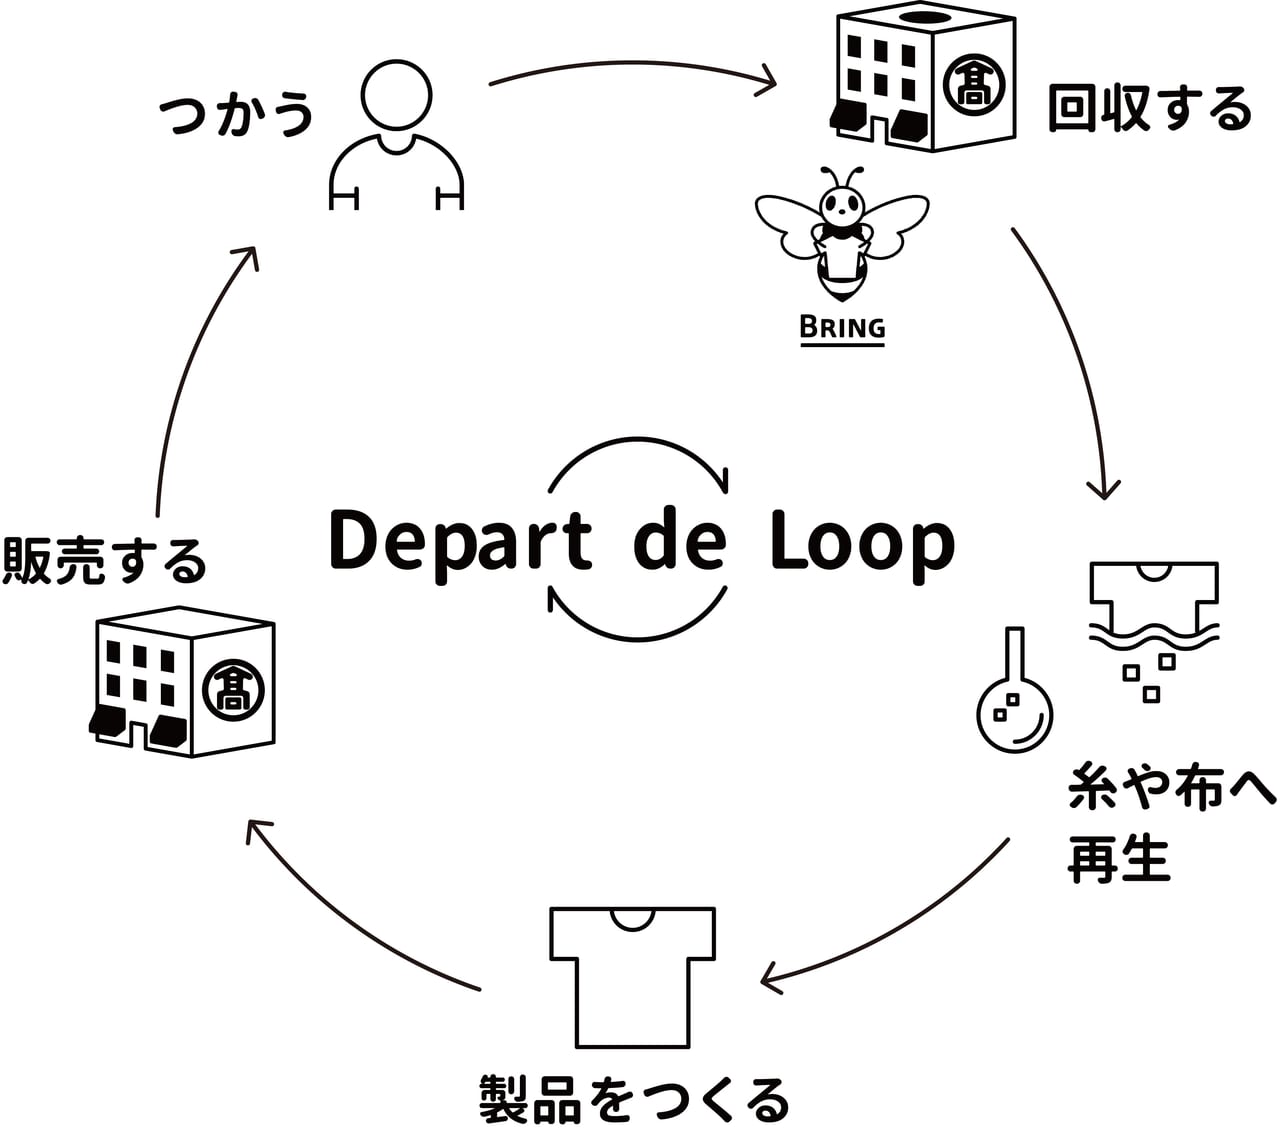 高島屋衣料品回収キャンペーンを2021年10月6日＝12日まで開催します。同時にDepart de Loopの秋冬新作を発売開始。